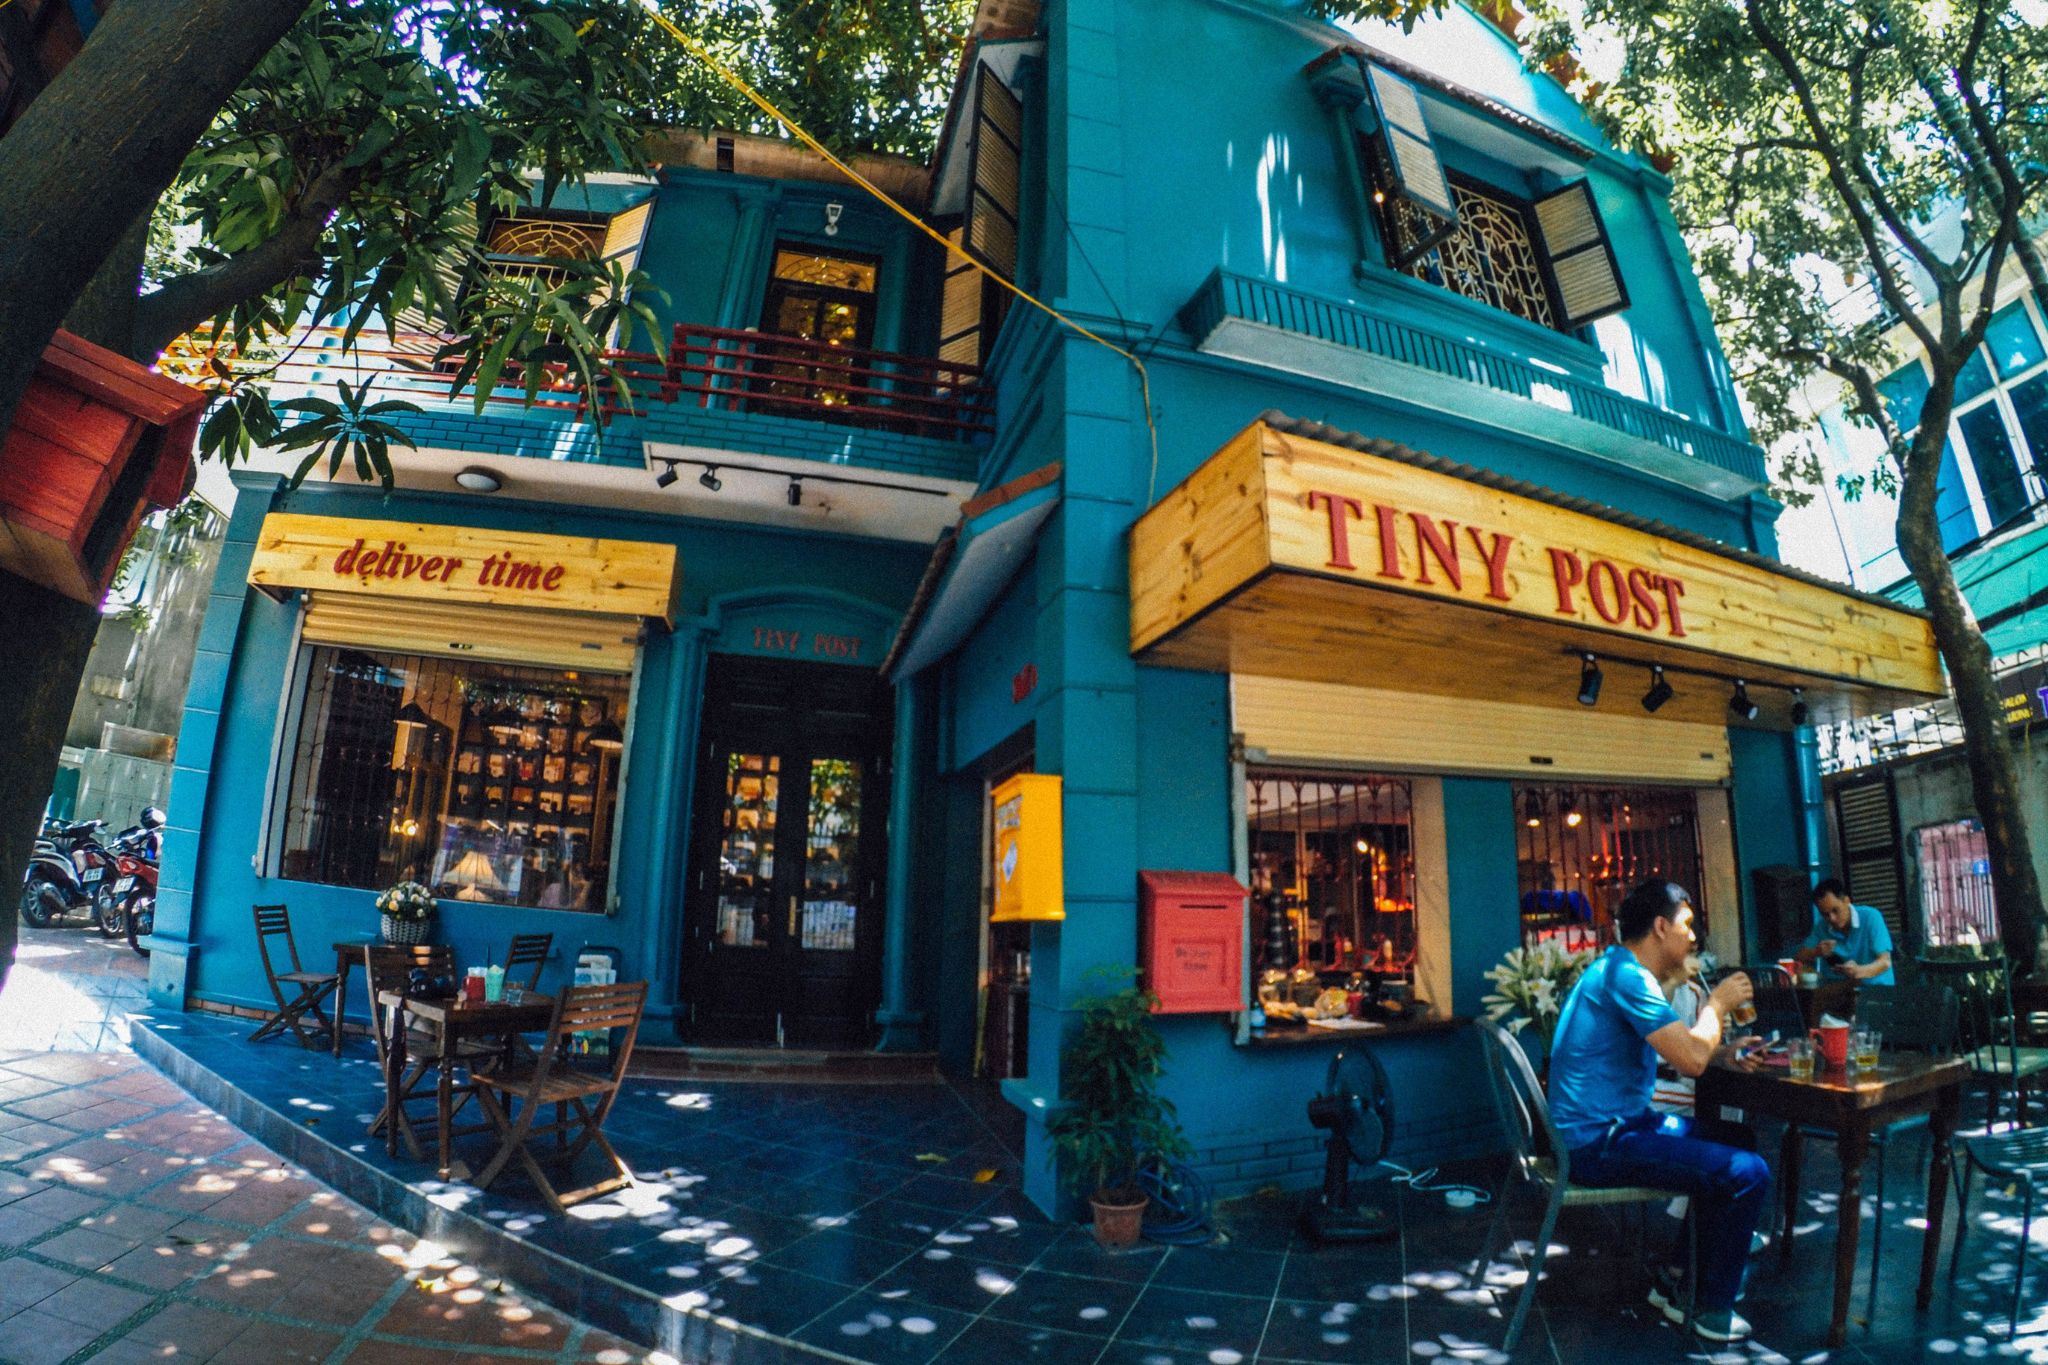 Review thiết kế Tiny Post Cafe - không gian vintage cổ điển